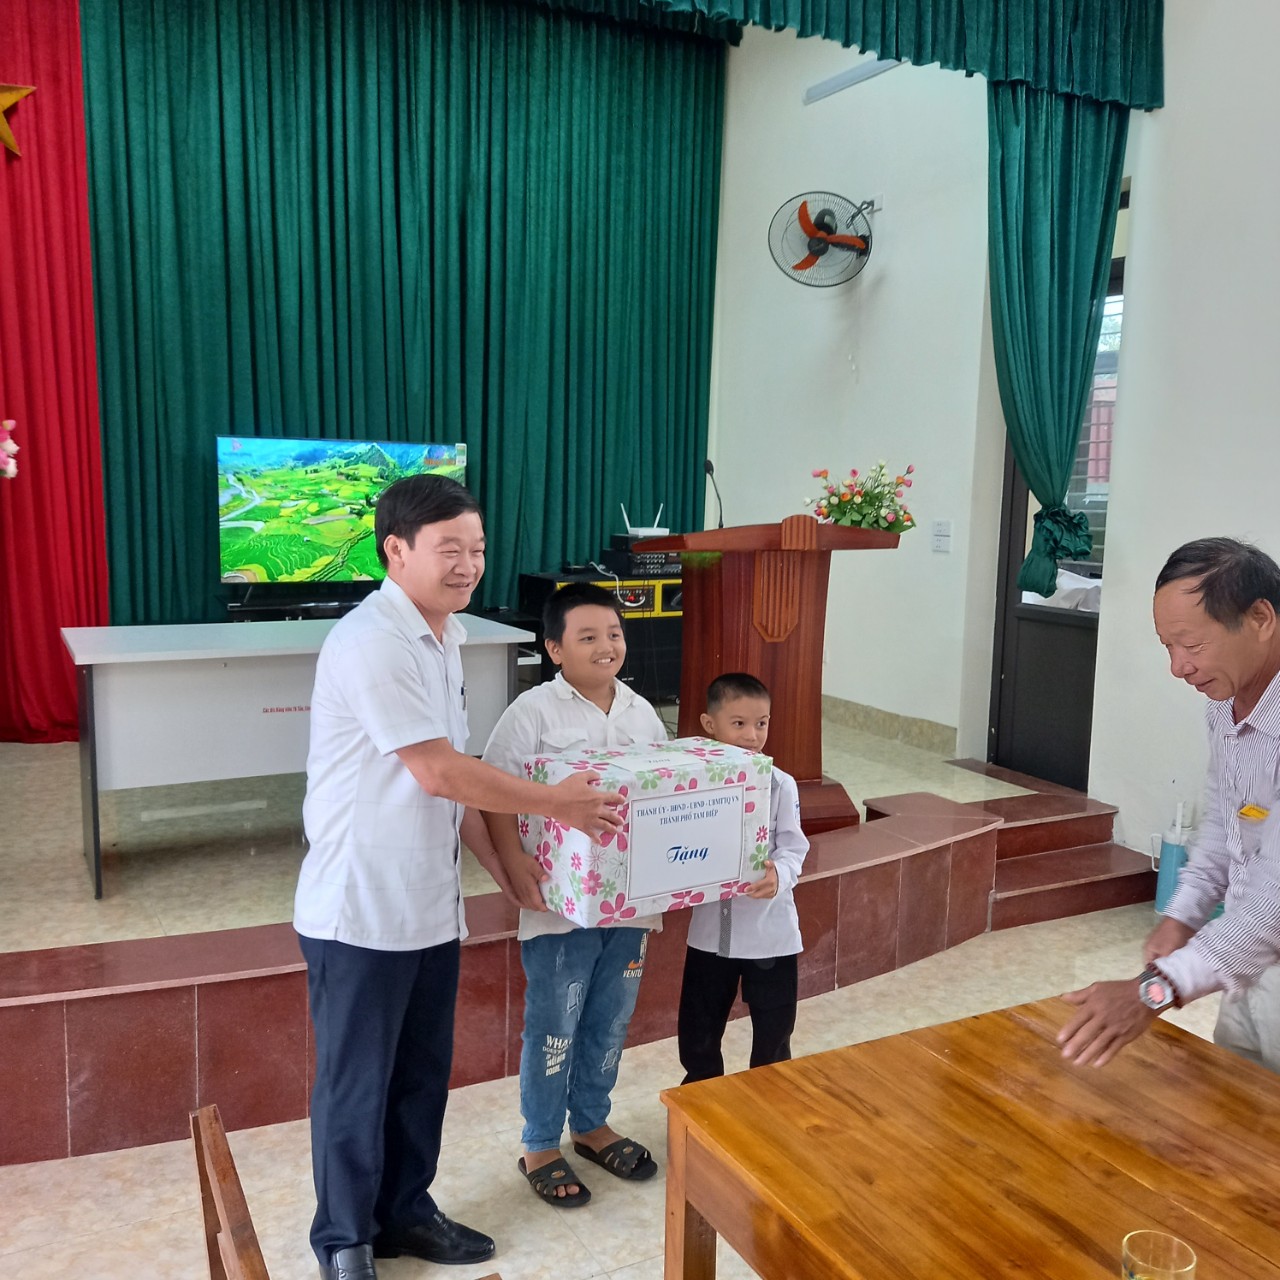 Đại diện lãnh đạo Thành ủy, HĐND, UBND và các ban, ngành đoàn thể của thành phố đến thăm, tặng quà cho các cháu thiếu niên, nhi đồng tại thôn Thống Nhất, xã Quang Sơn nhân dịp Tết Trung thu năm 2022